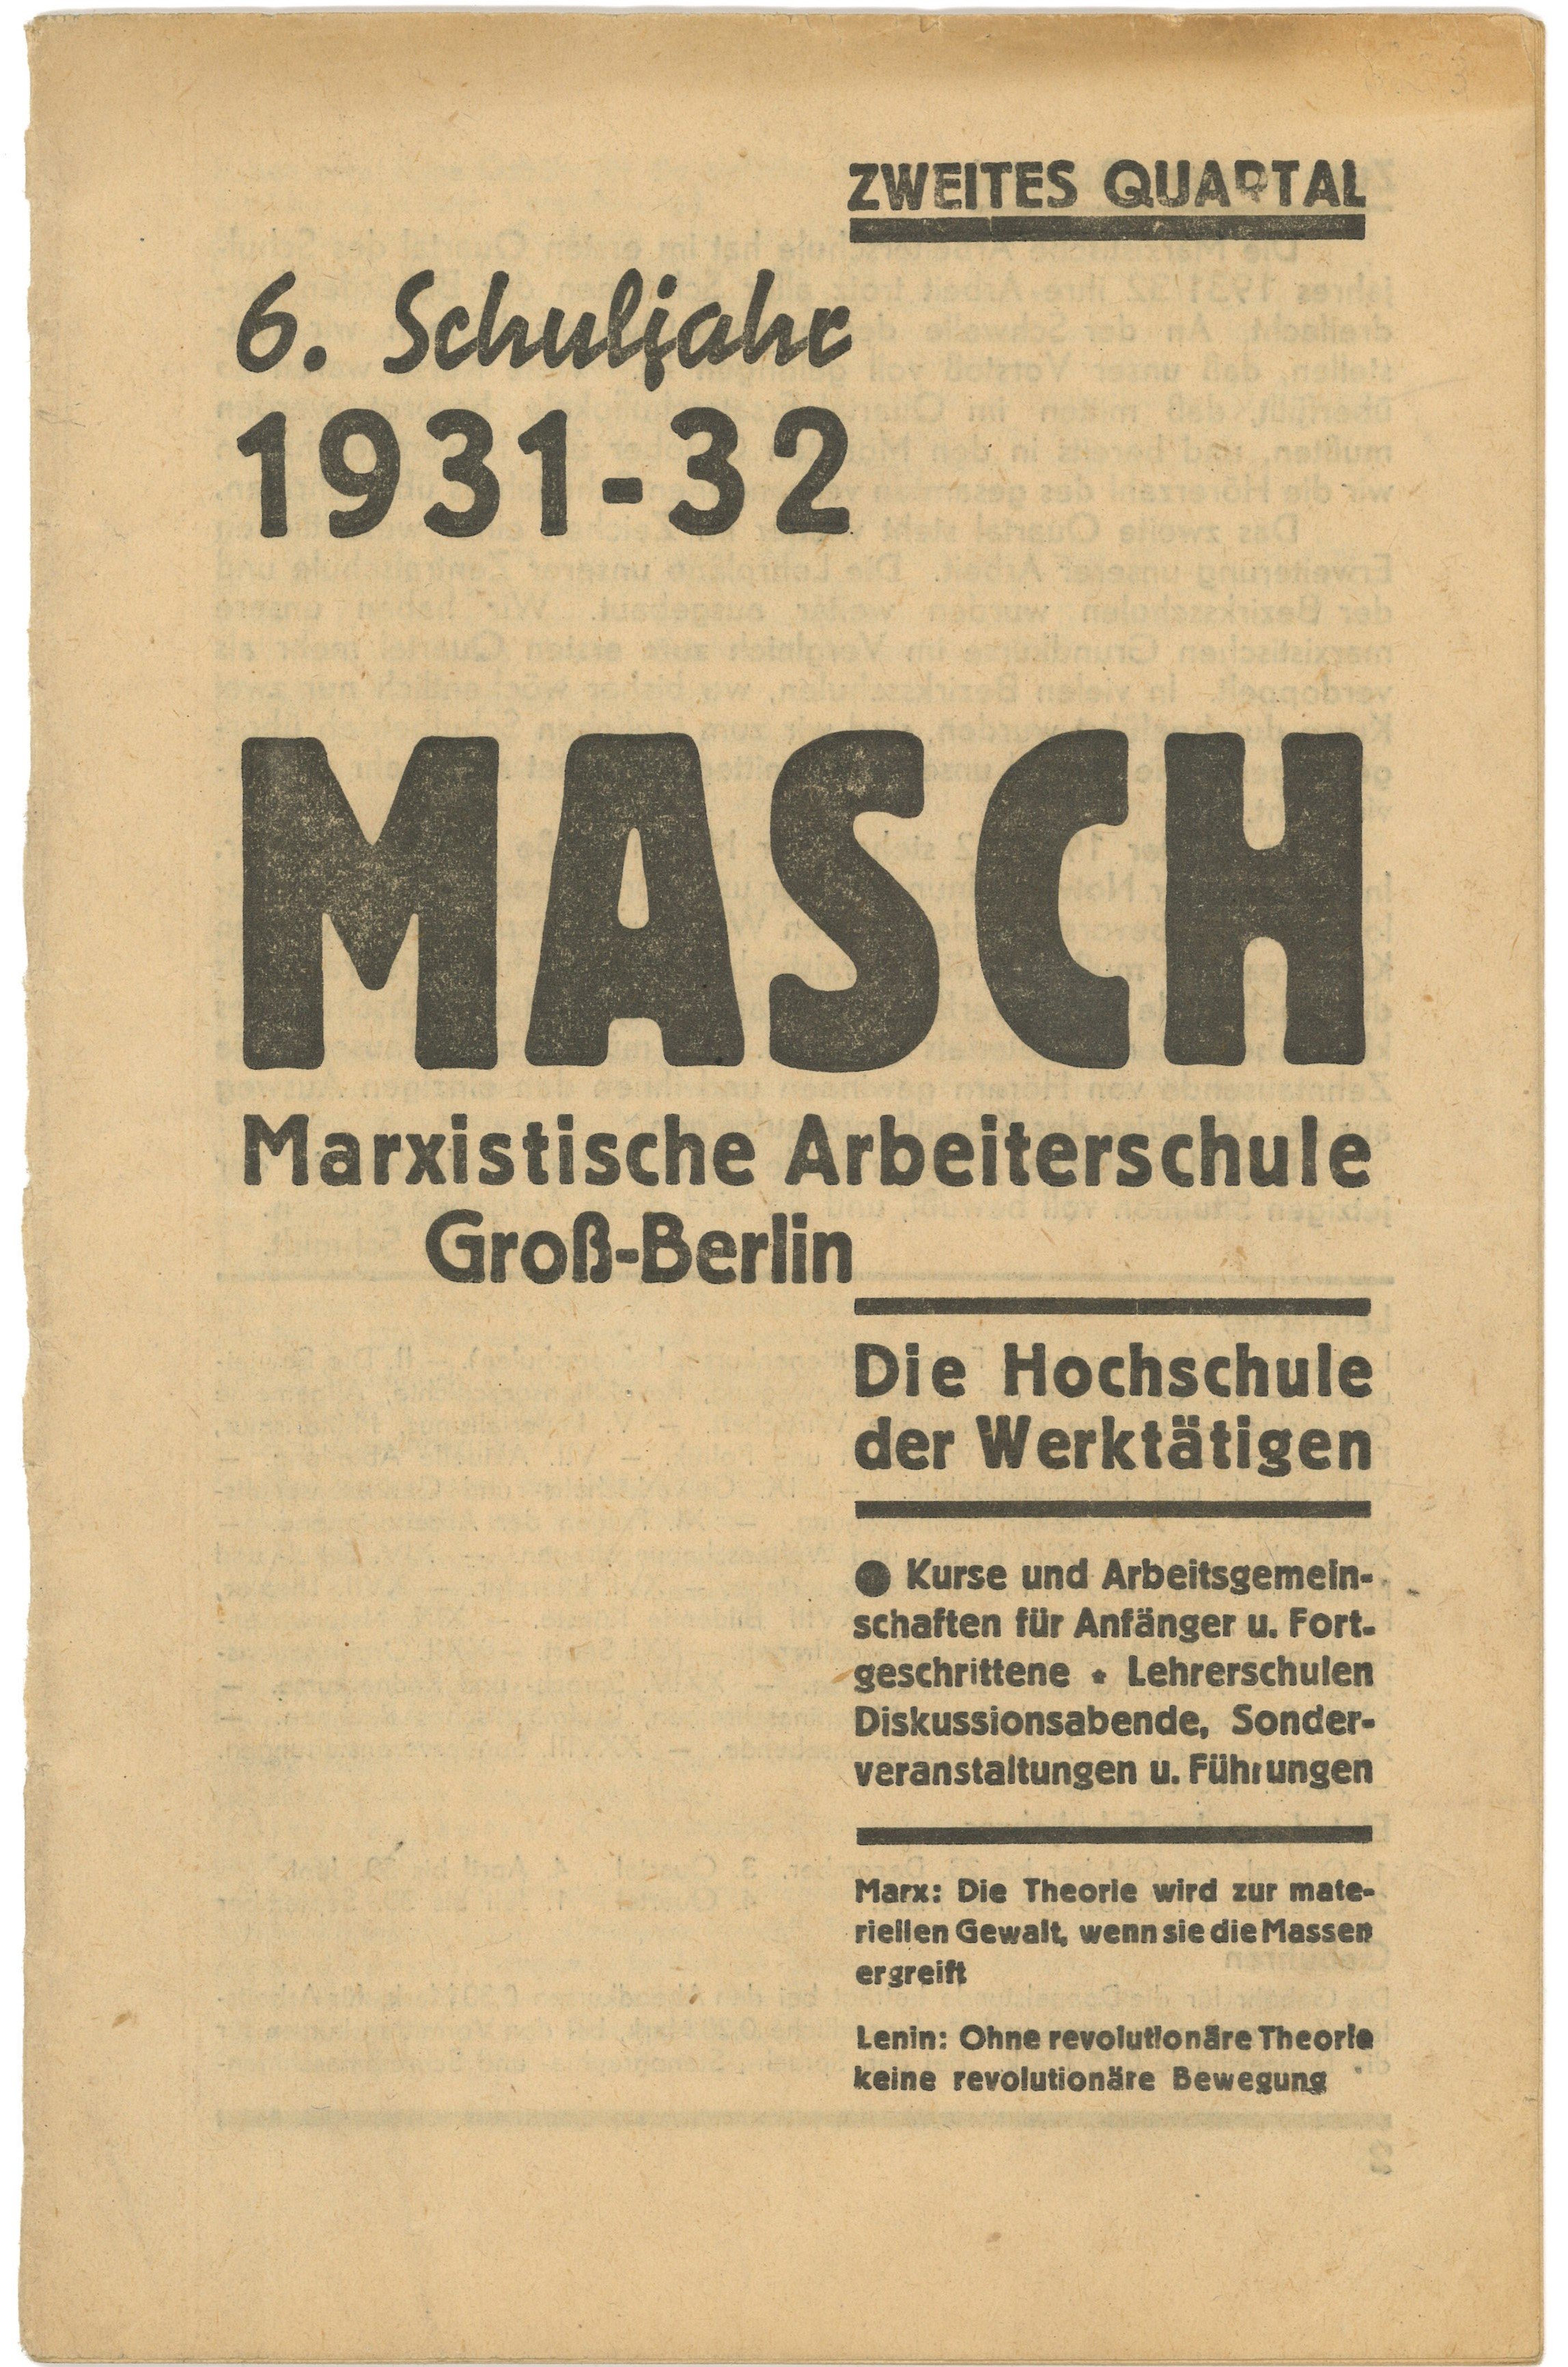 Lehrplan der MASCH Marxistschen Arbeiterschule Groß-Berlin 1931/32 (Landesgeschichtliche Vereinigung für die Mark Brandenburg e.V., Archiv CC BY)